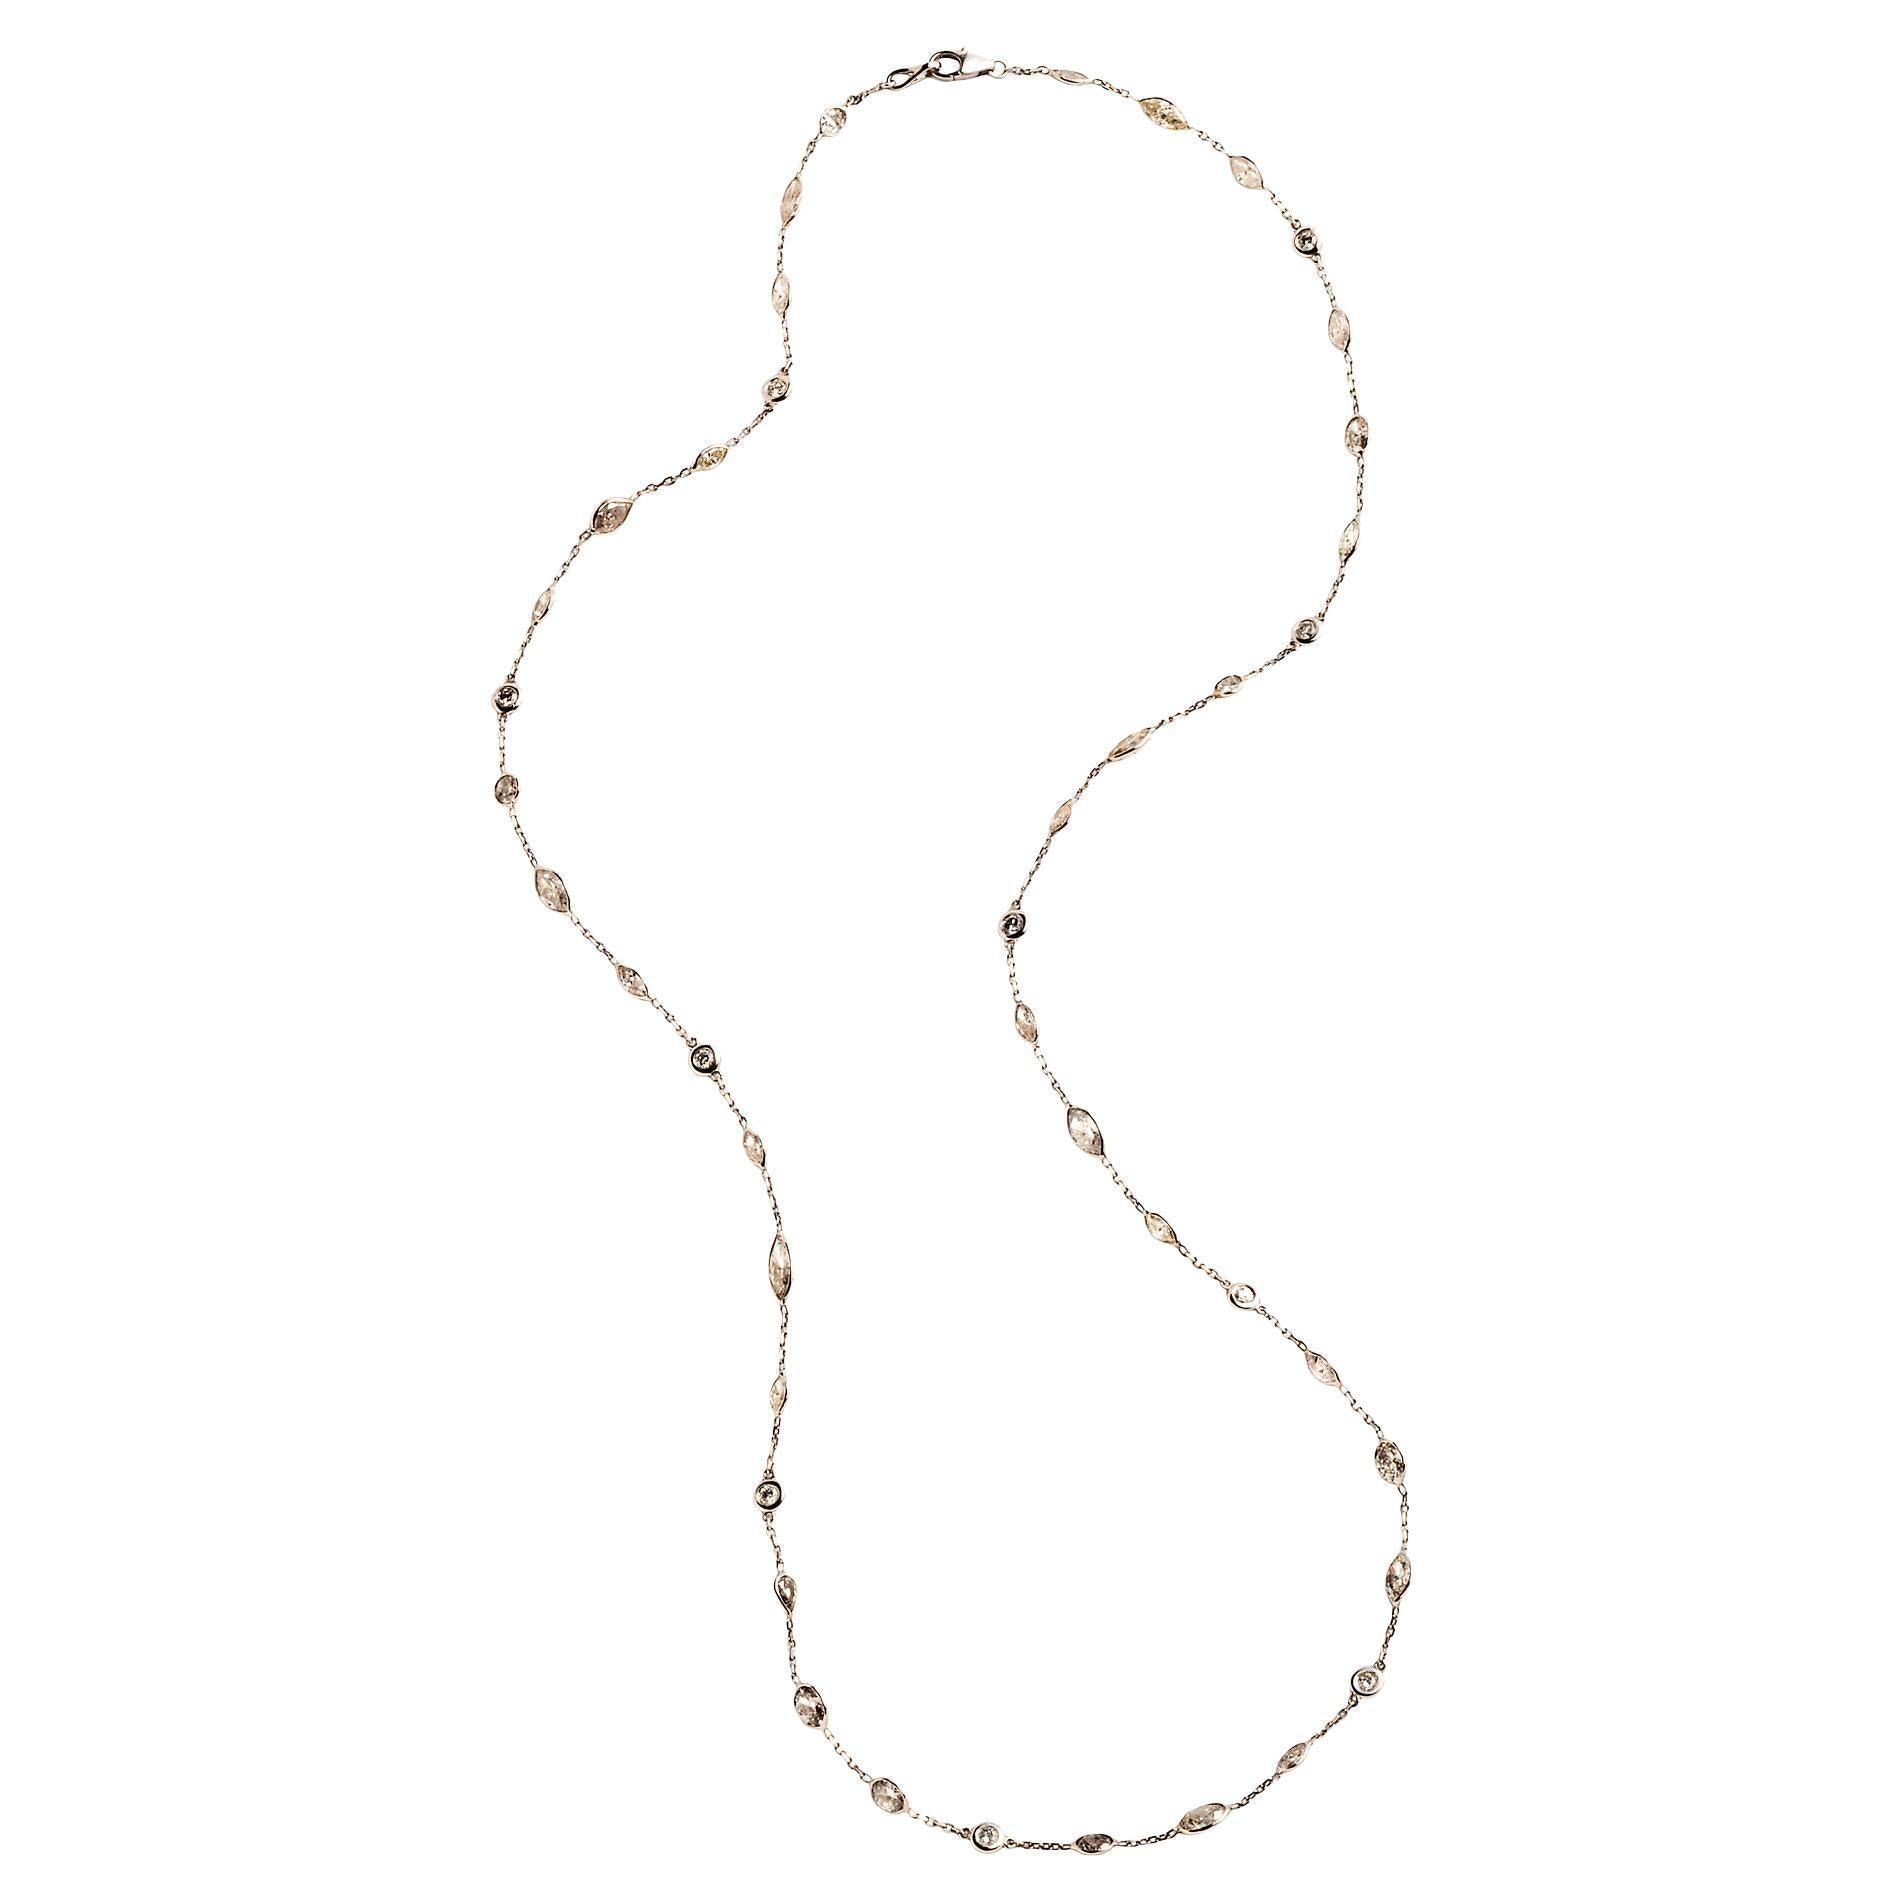 Diese zarte Halskette aus 14 Karat Weißgold ist mit ca. 10 Karat abwechselnd runder, ovaler, marquiser und birnenförmiger Diamanten besetzt. Die Diamantfacetten fangen das Licht ein, wenn sich die Halskette am Körper bewegt.

25